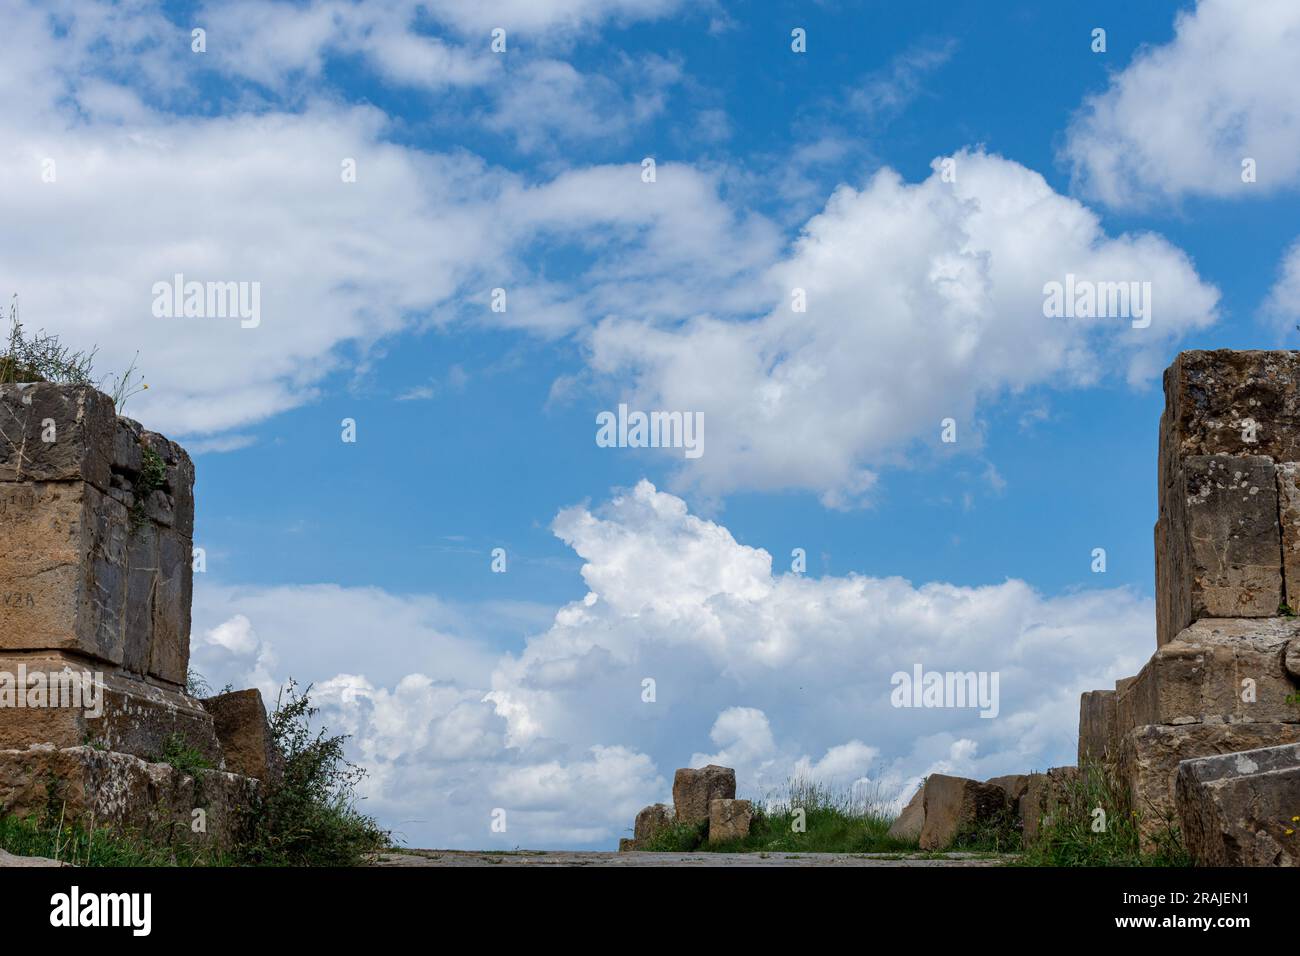 Ruines romaines dans l'ancienne ville de Cuicul à Djemila, Sétif, Algérie. Site du patrimoine mondial de l'UNESCO. Banque D'Images